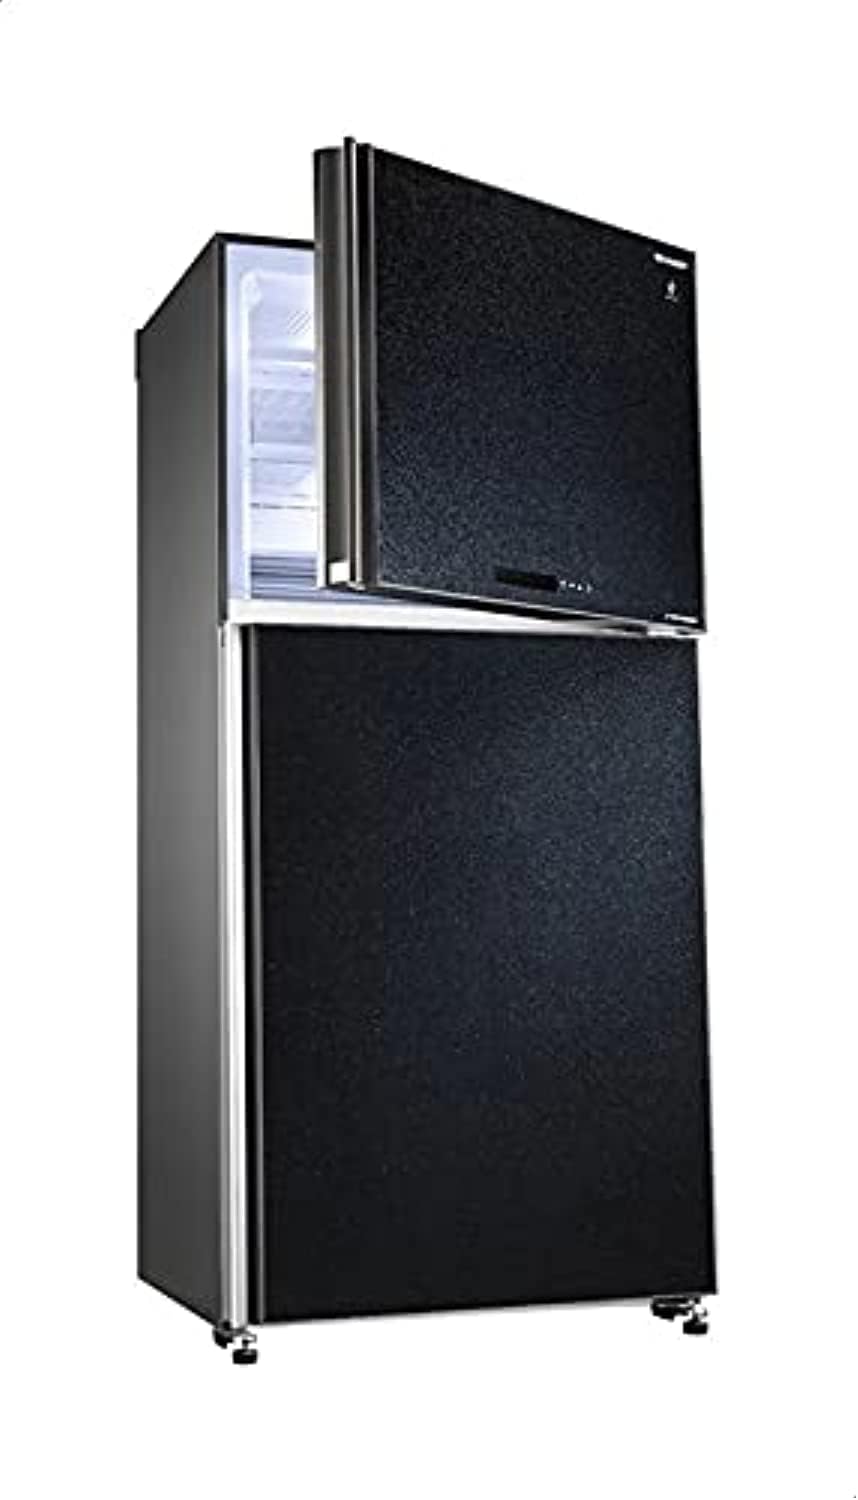 SHARP Refrigerator 480 LTR Hybrid Black Glass Doors